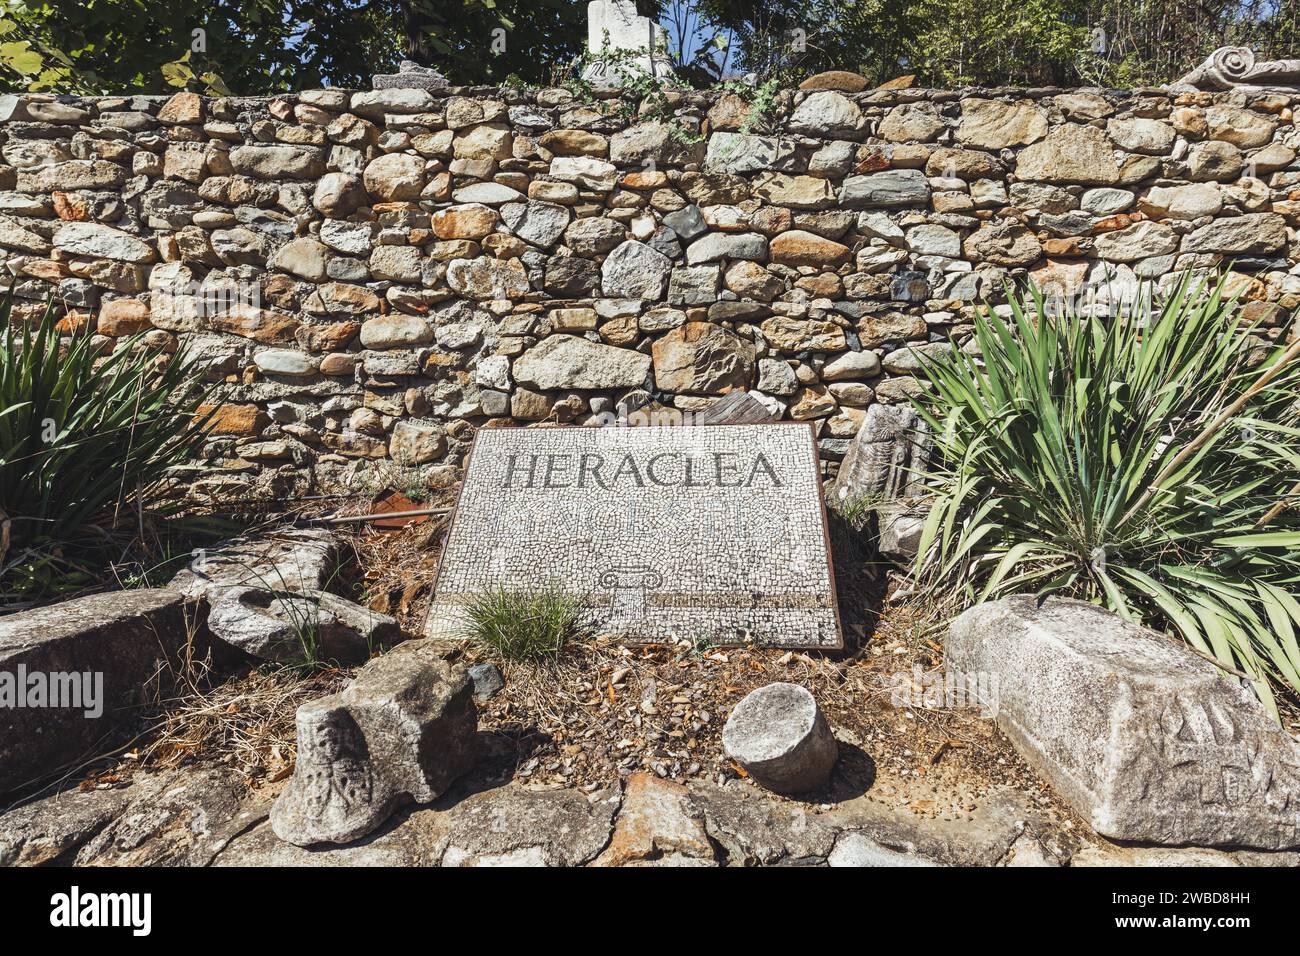 Ein in Stein gehauenes Schild mit der Aufschrift „Heraclea“ am Eingang zu Heraclea Lyncestis, einer antiken griechischen Stadt in der Nähe des heutigen Bitola in Nordmazedonien. Stockfoto